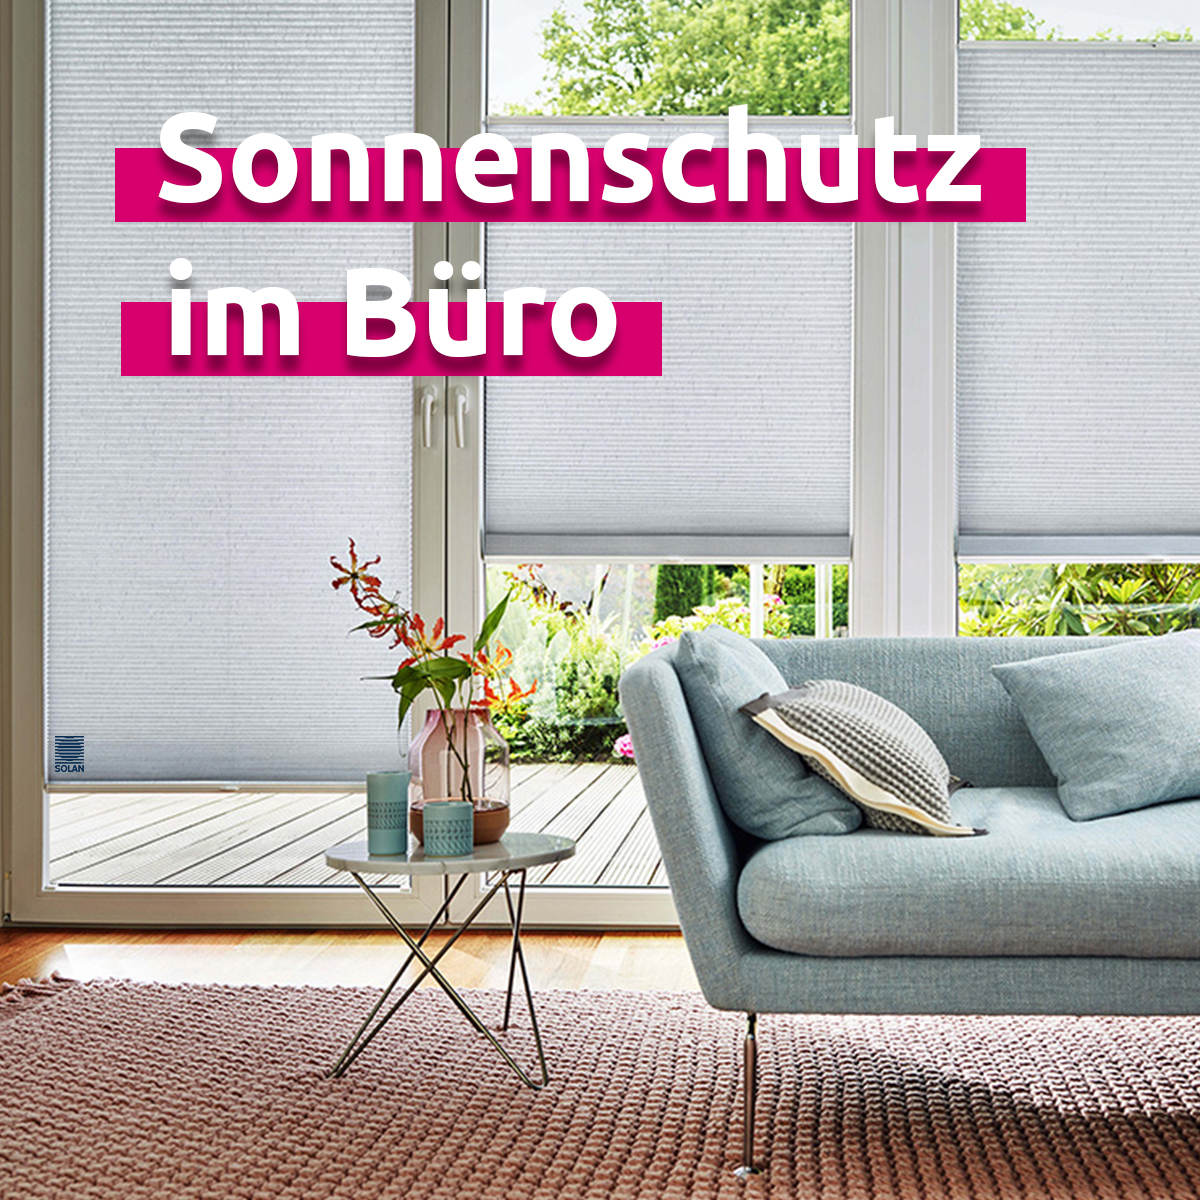 Sonnenschutz im Büro - News der Büroland GmbH Chemnitz